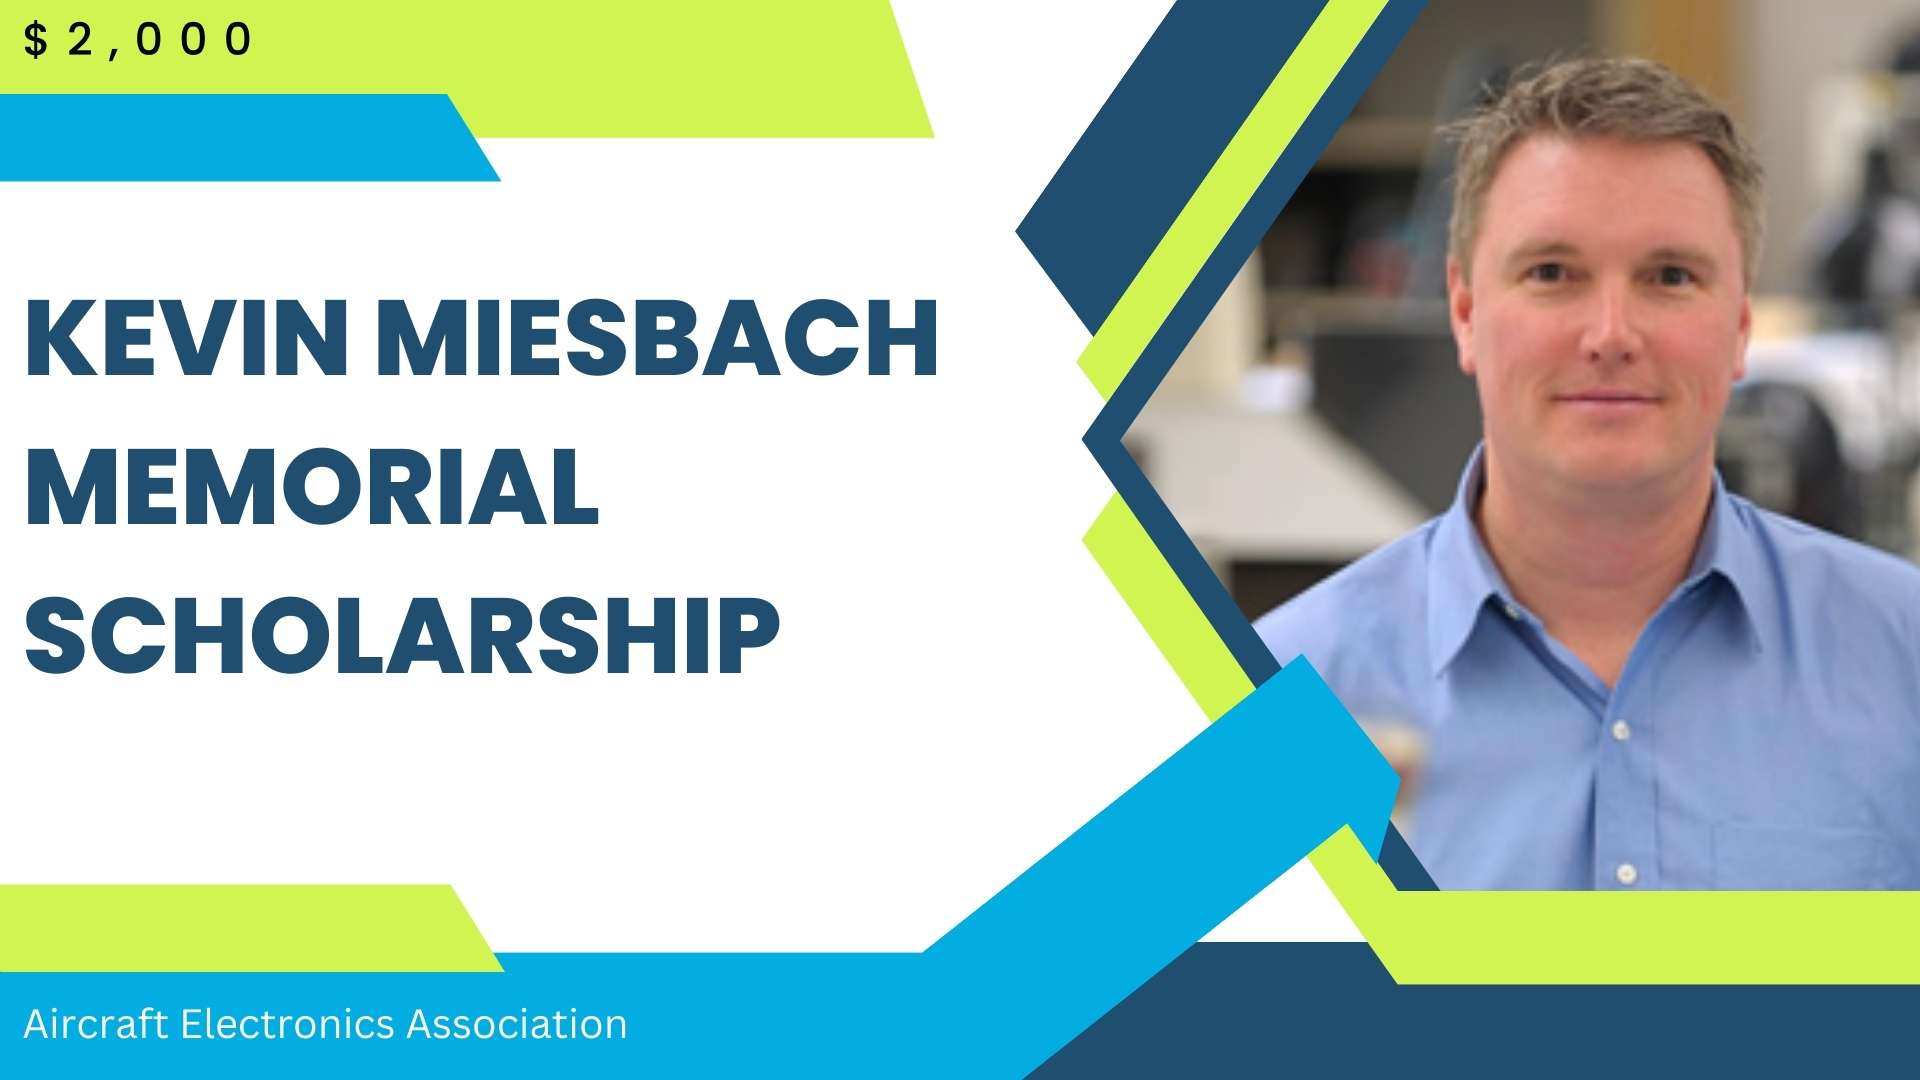 Kevin Miesbach Memorial Scholarship